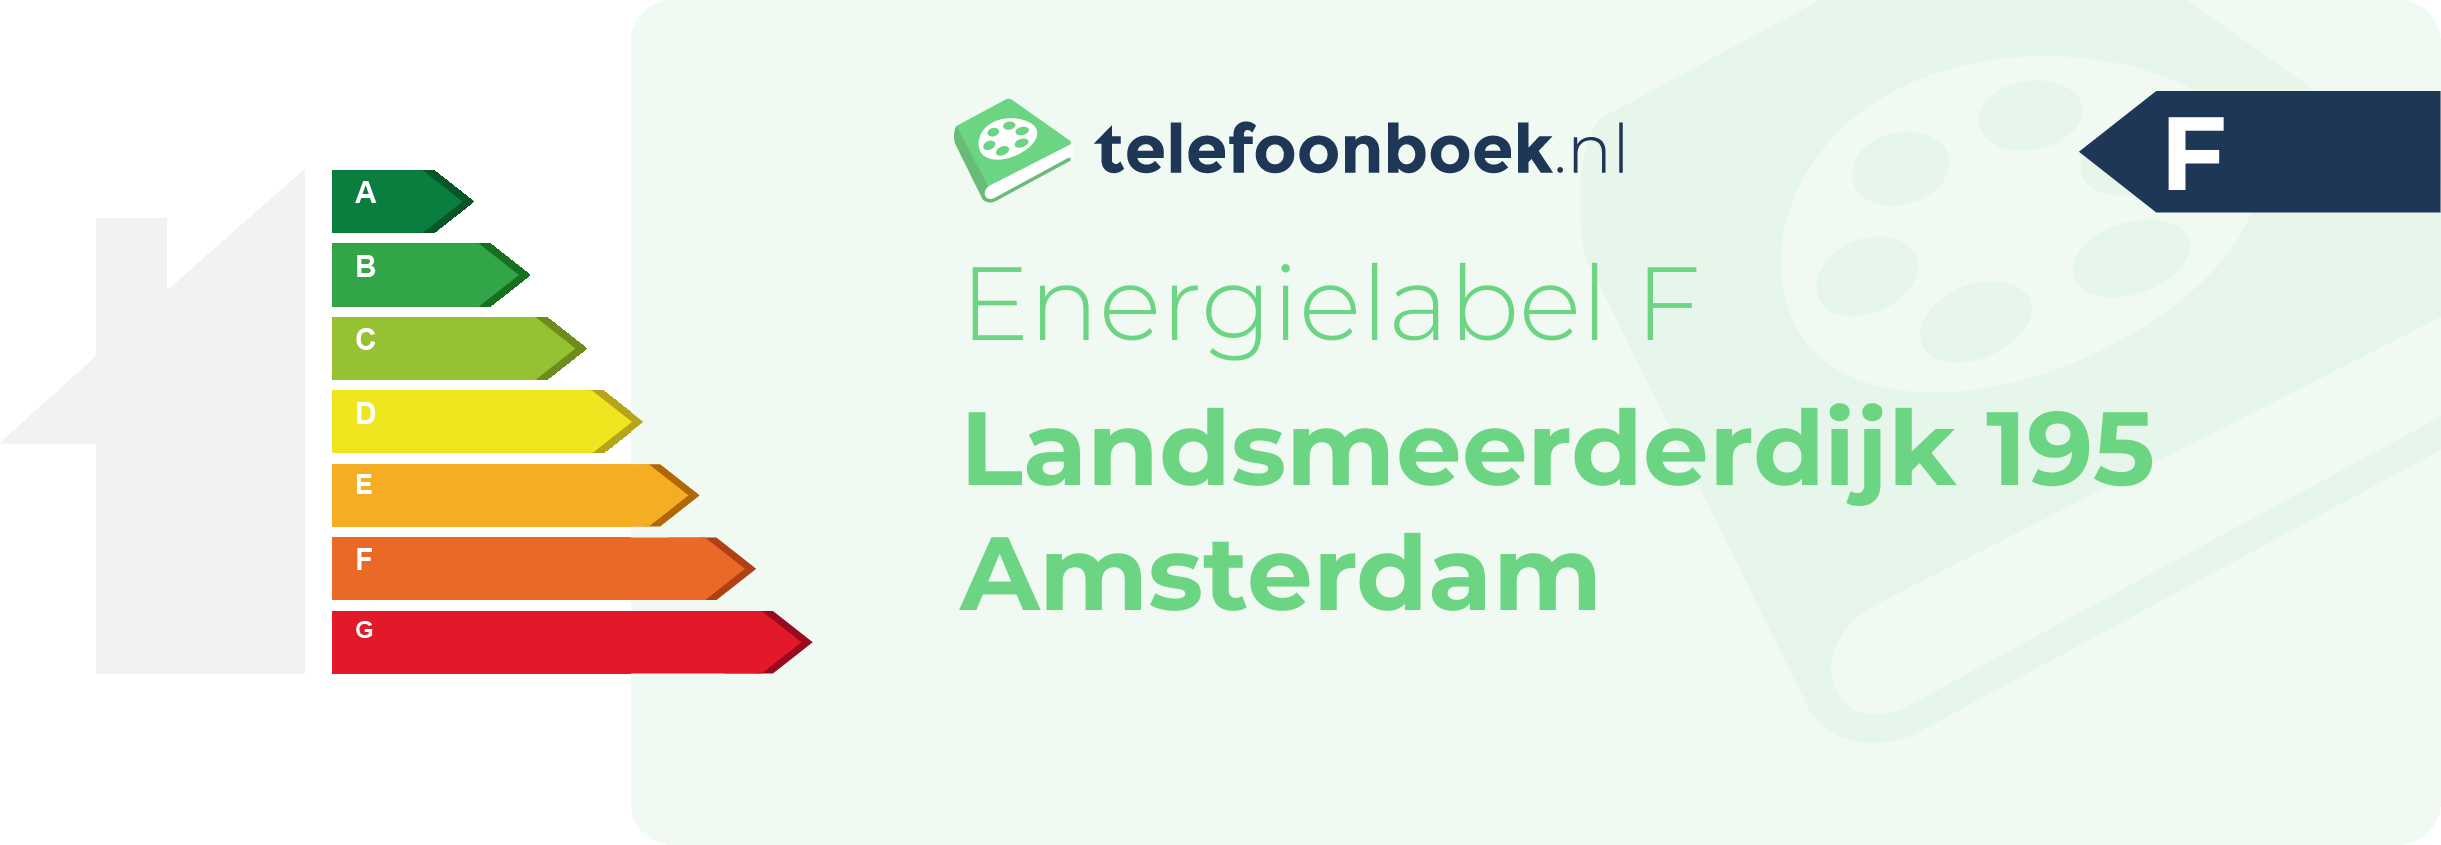 Energielabel Landsmeerderdijk 195 Amsterdam